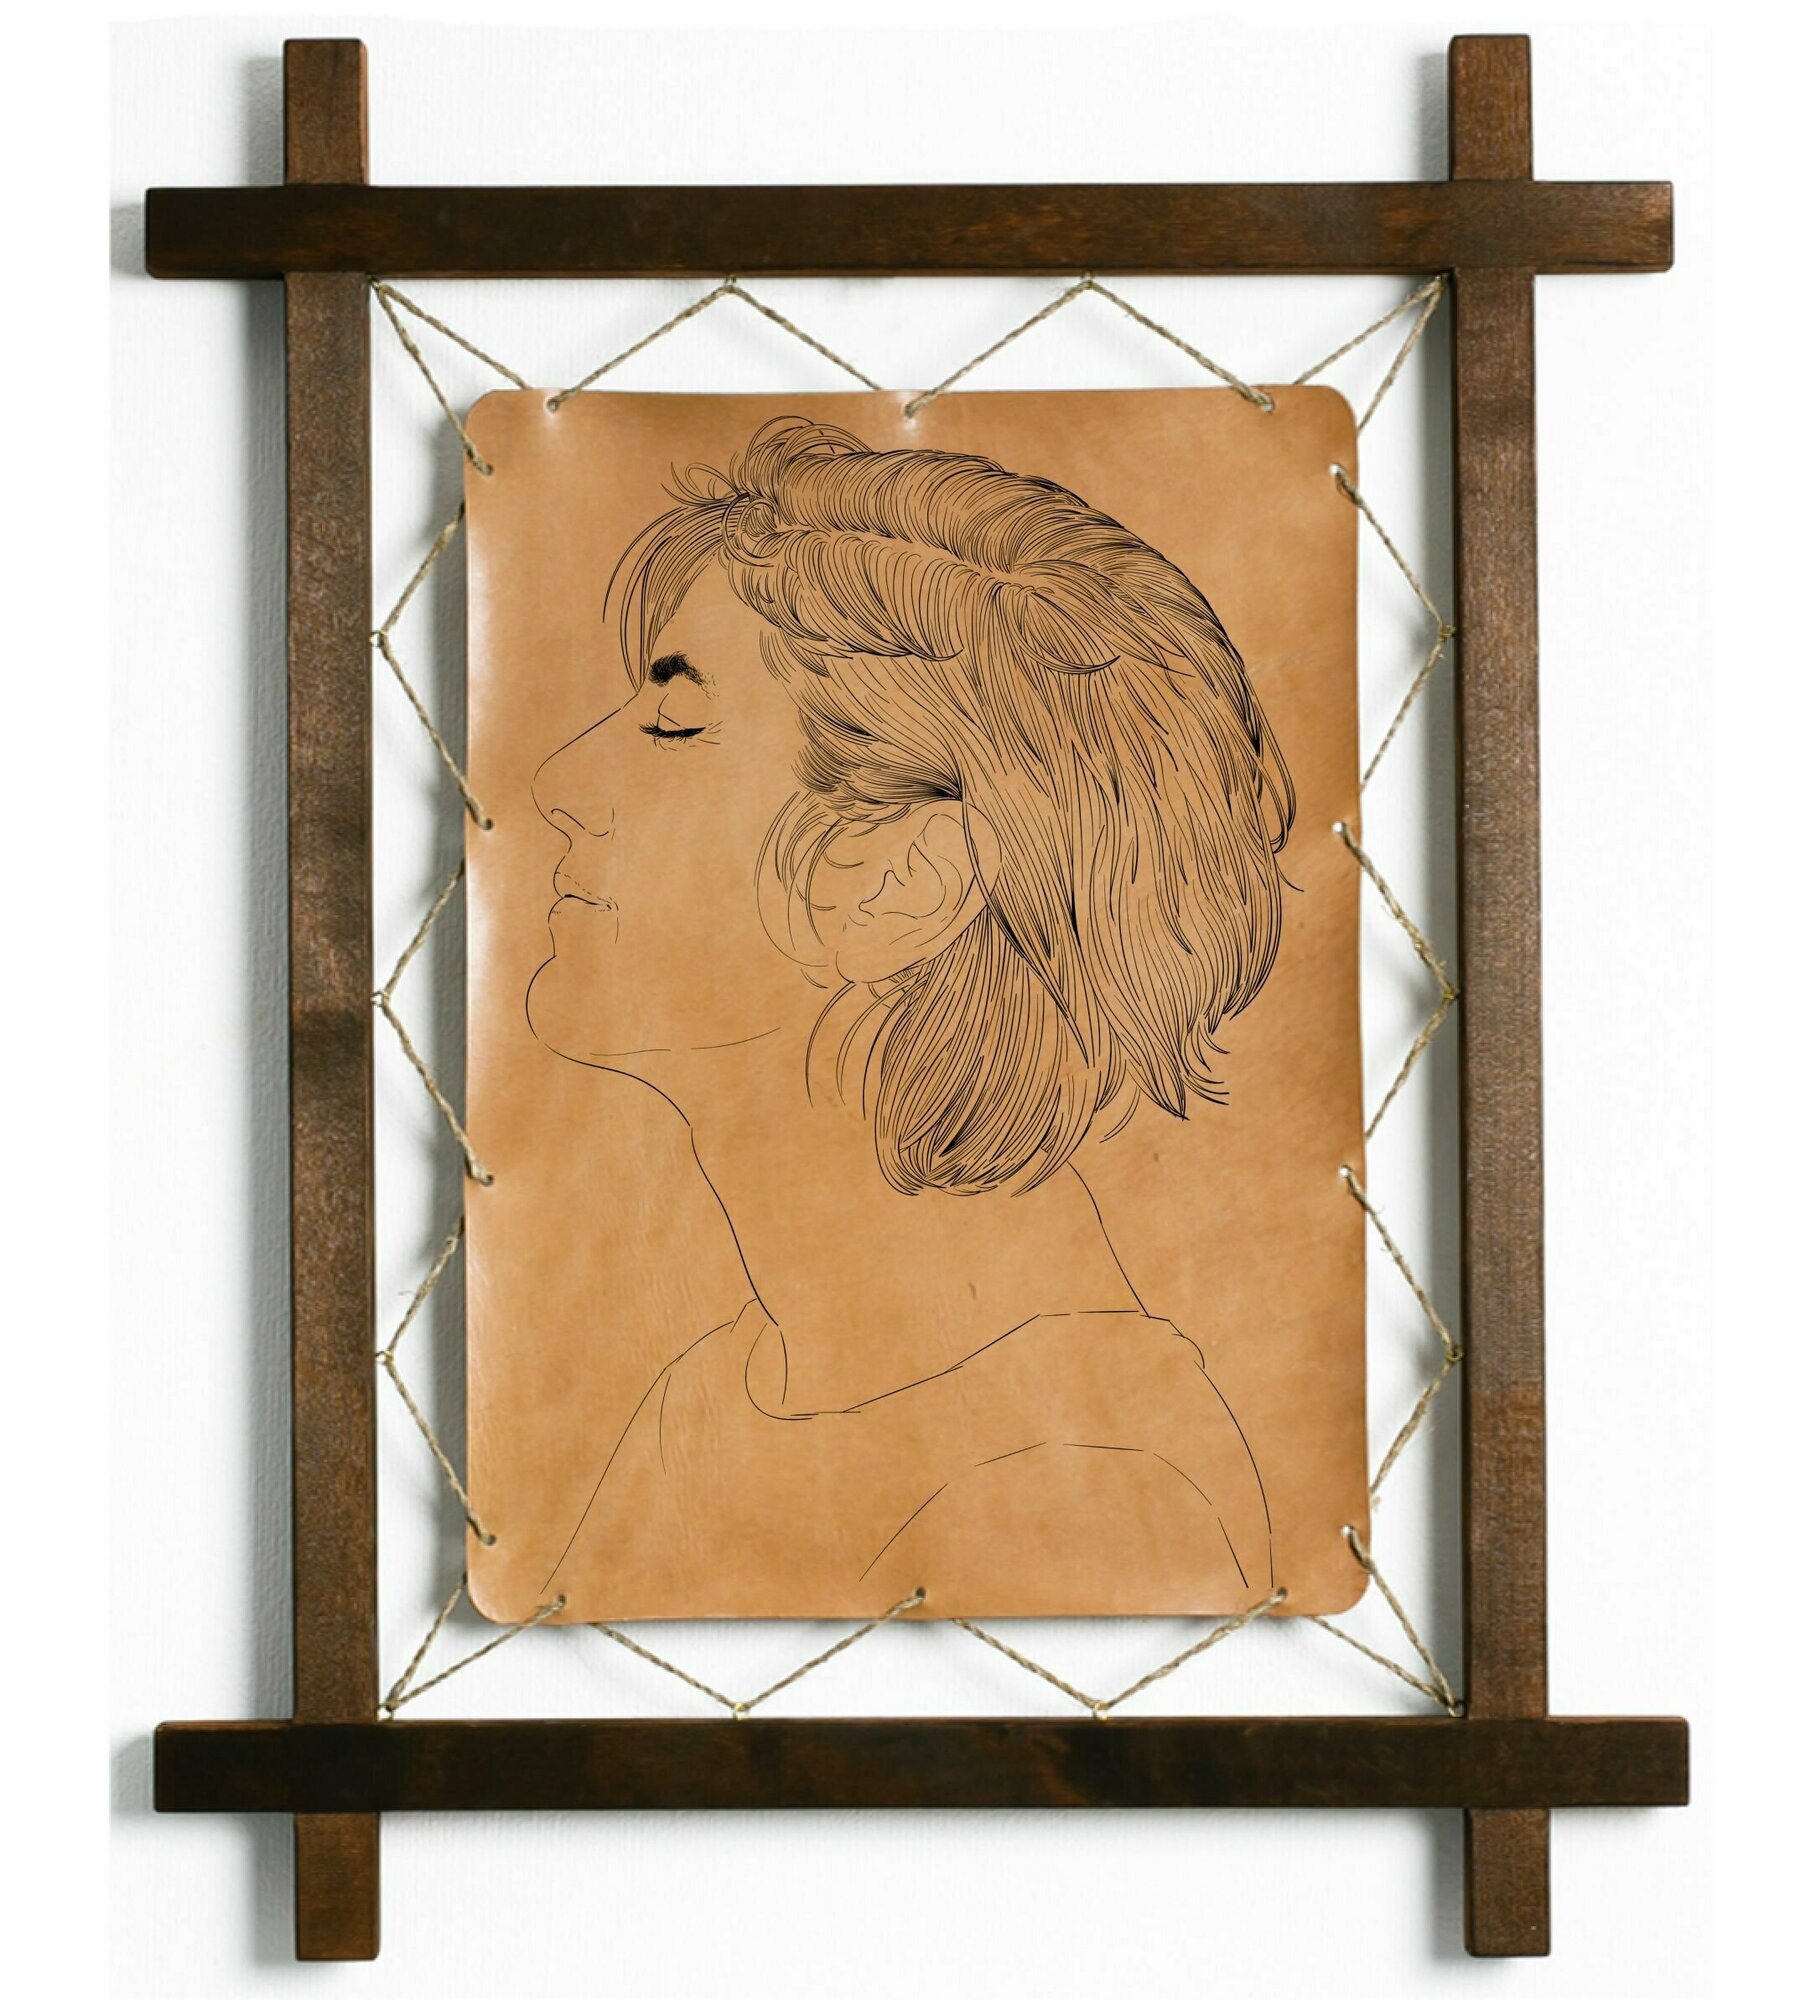 Картина Женщина с закрытыми глазами, гравировка на натуральной коже, интерьерная для украшения и декора на стену в деревянной раме, подарок, BoomGift